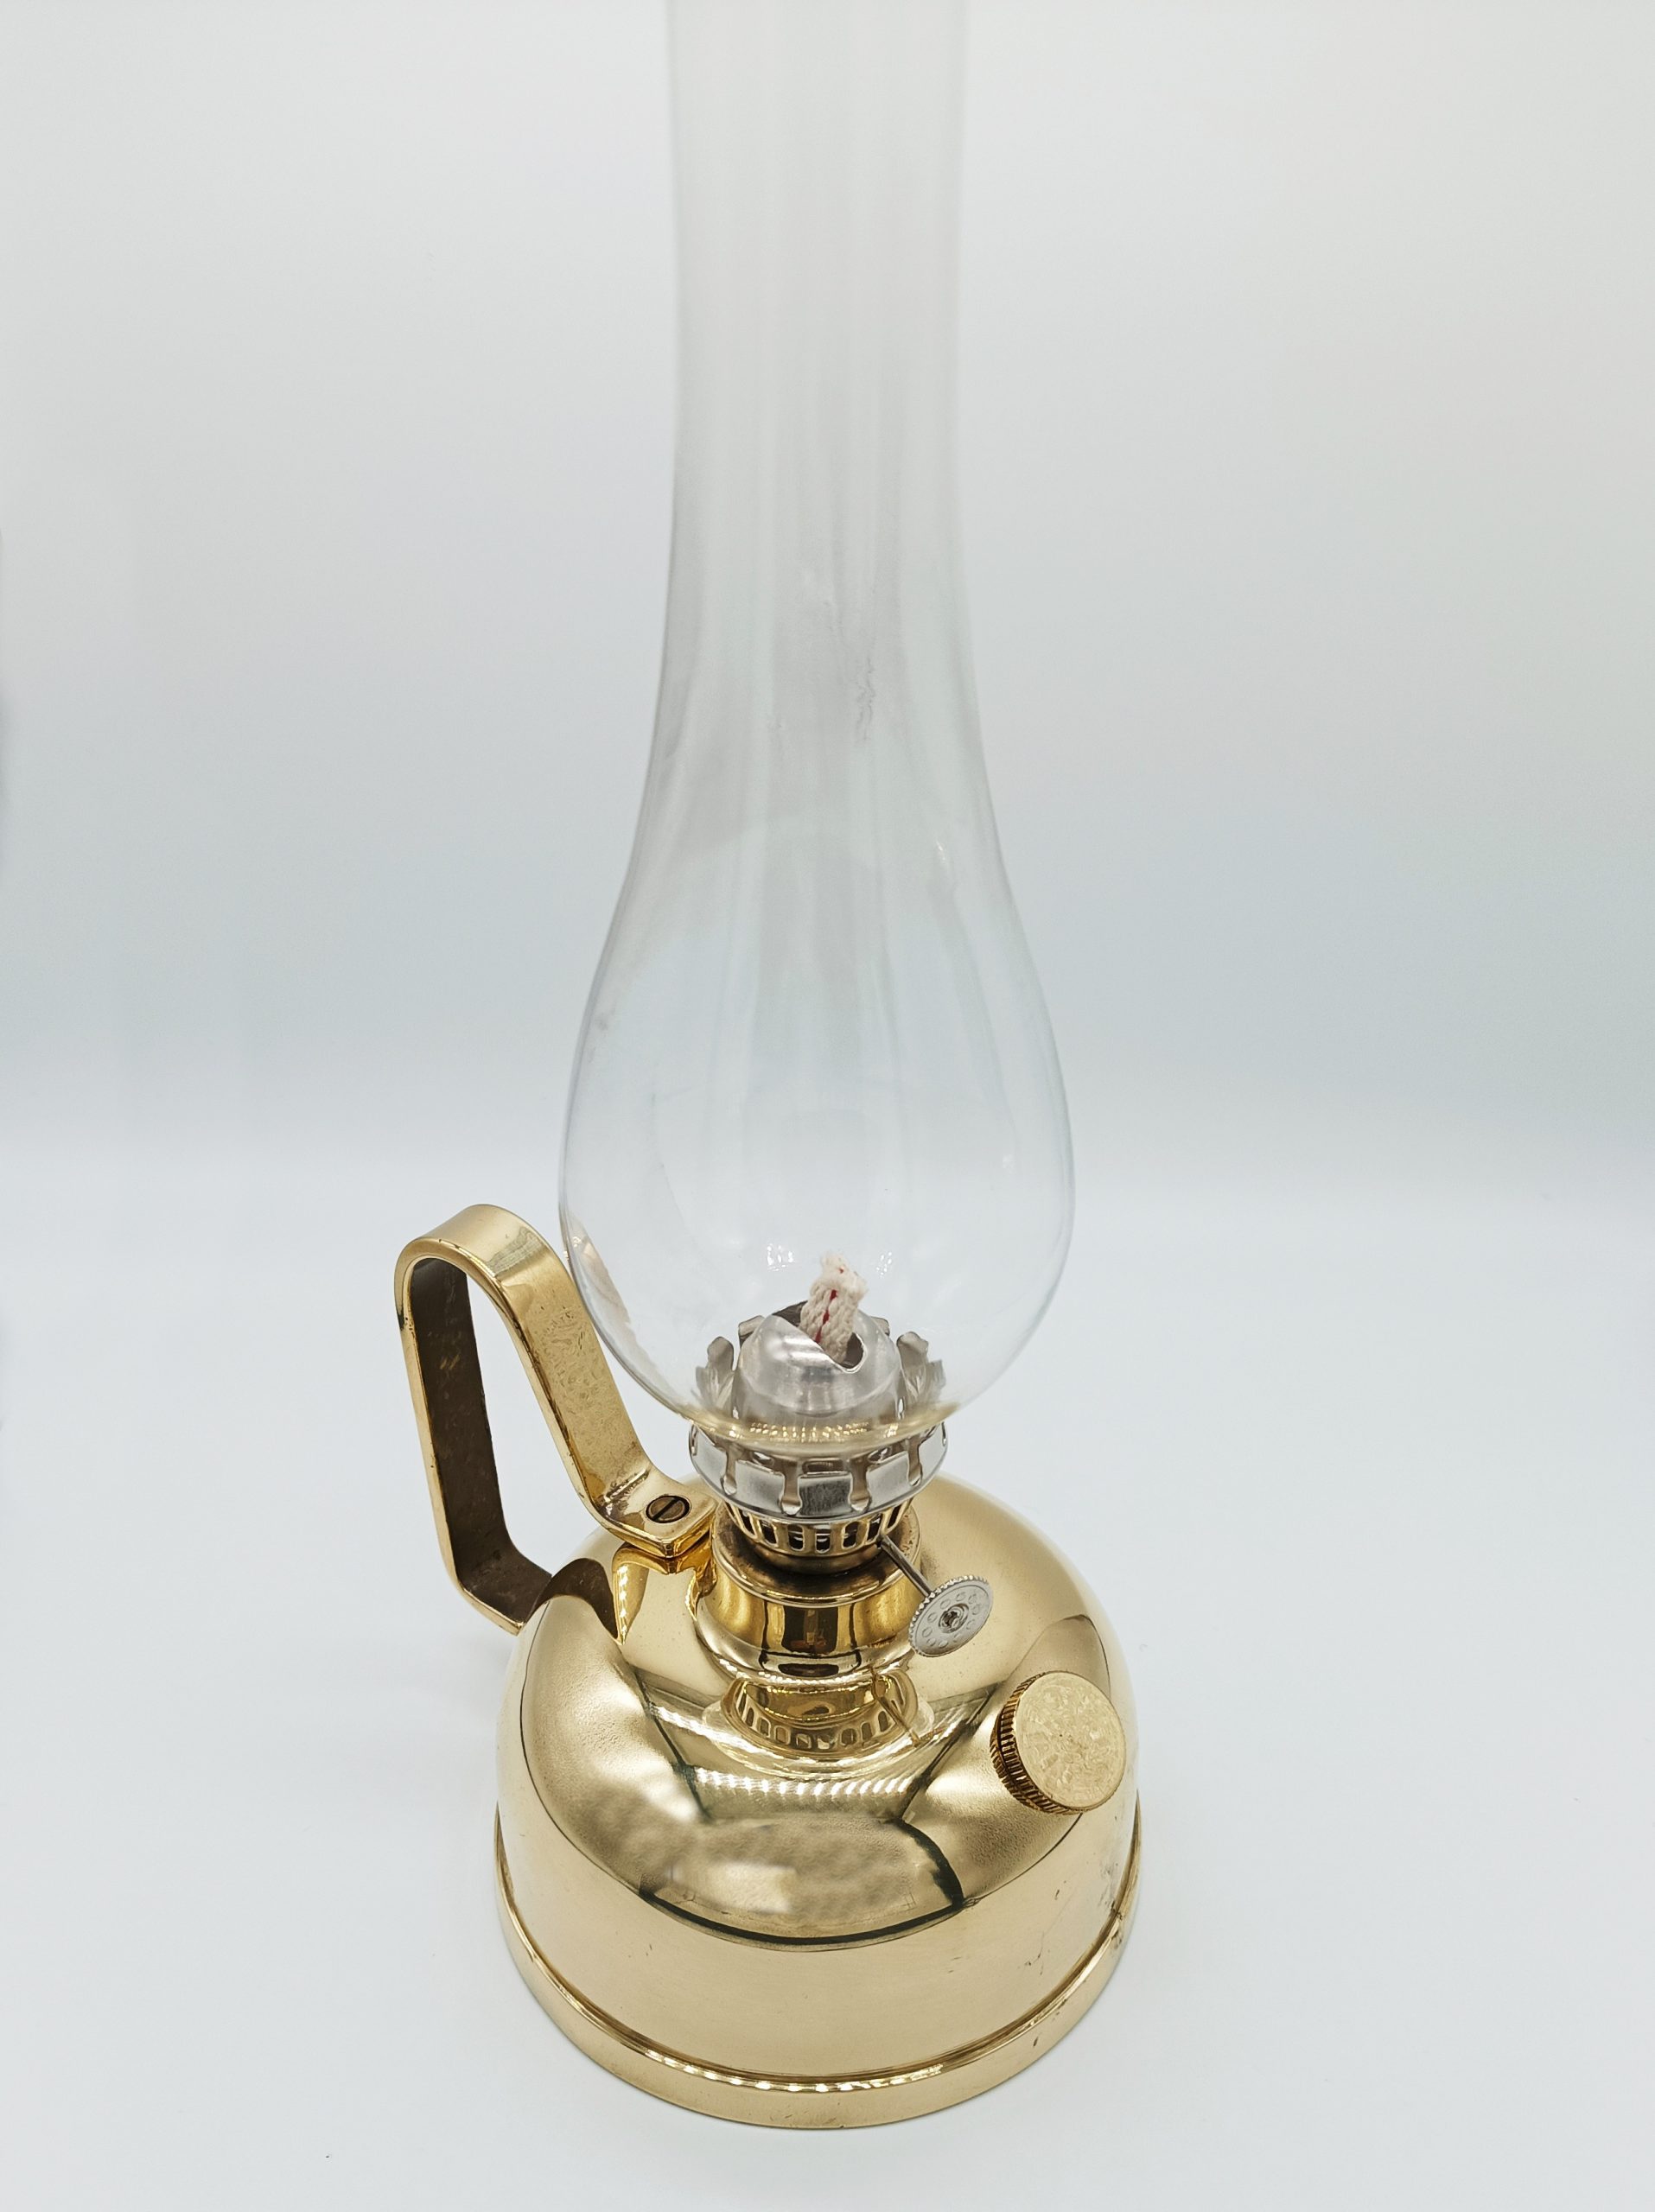 LAMPADA A OLIO kerosene antica vintage con capsula in vetro EUR 49